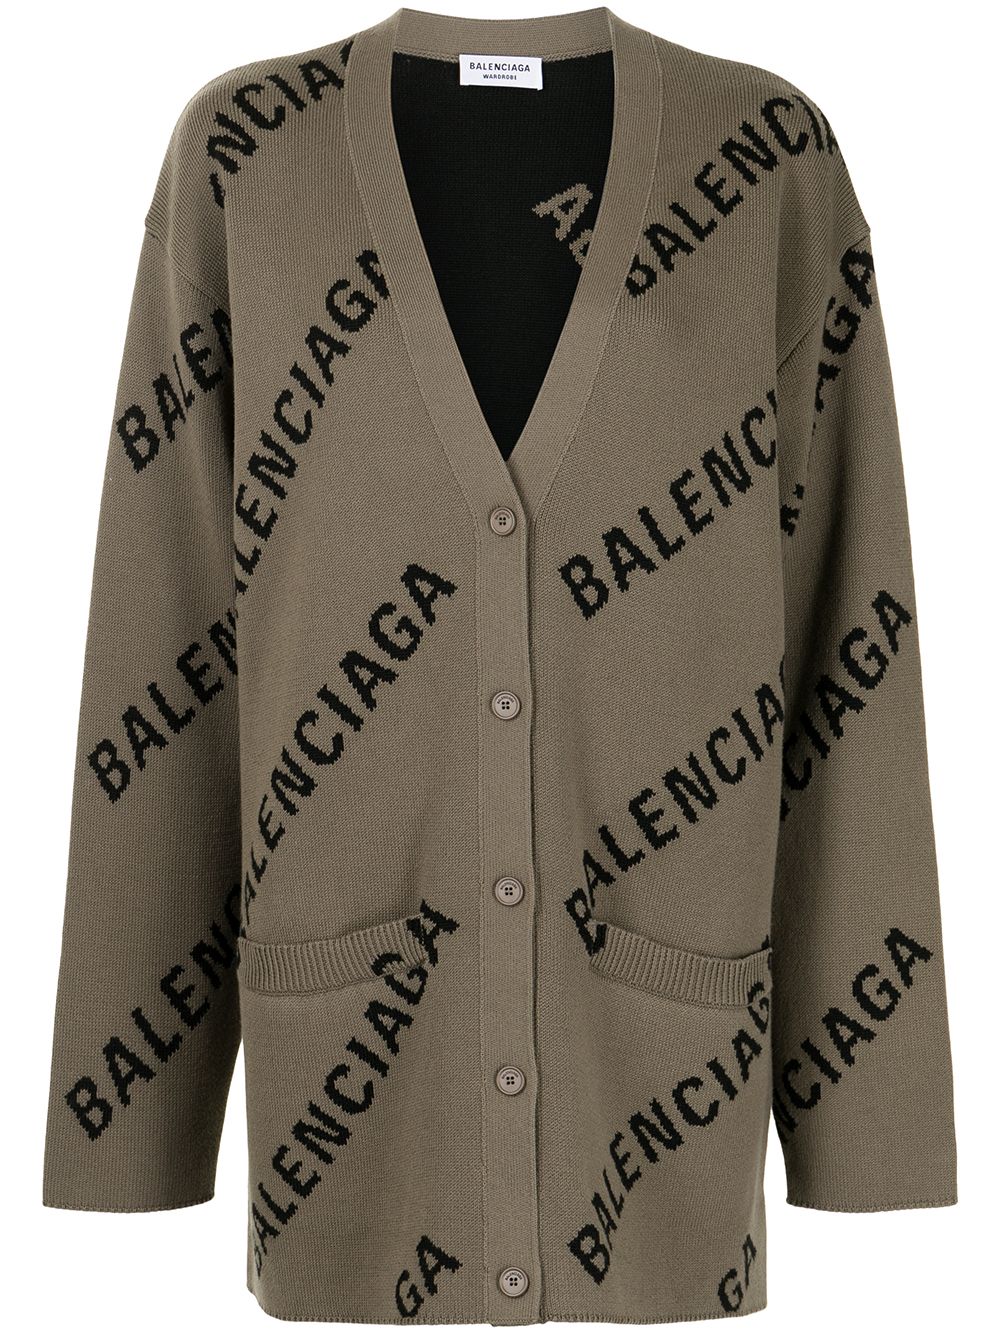 BALENCIAGA Cardigan oversize marrone chiaro in cotone e lana con logo Balenciaga